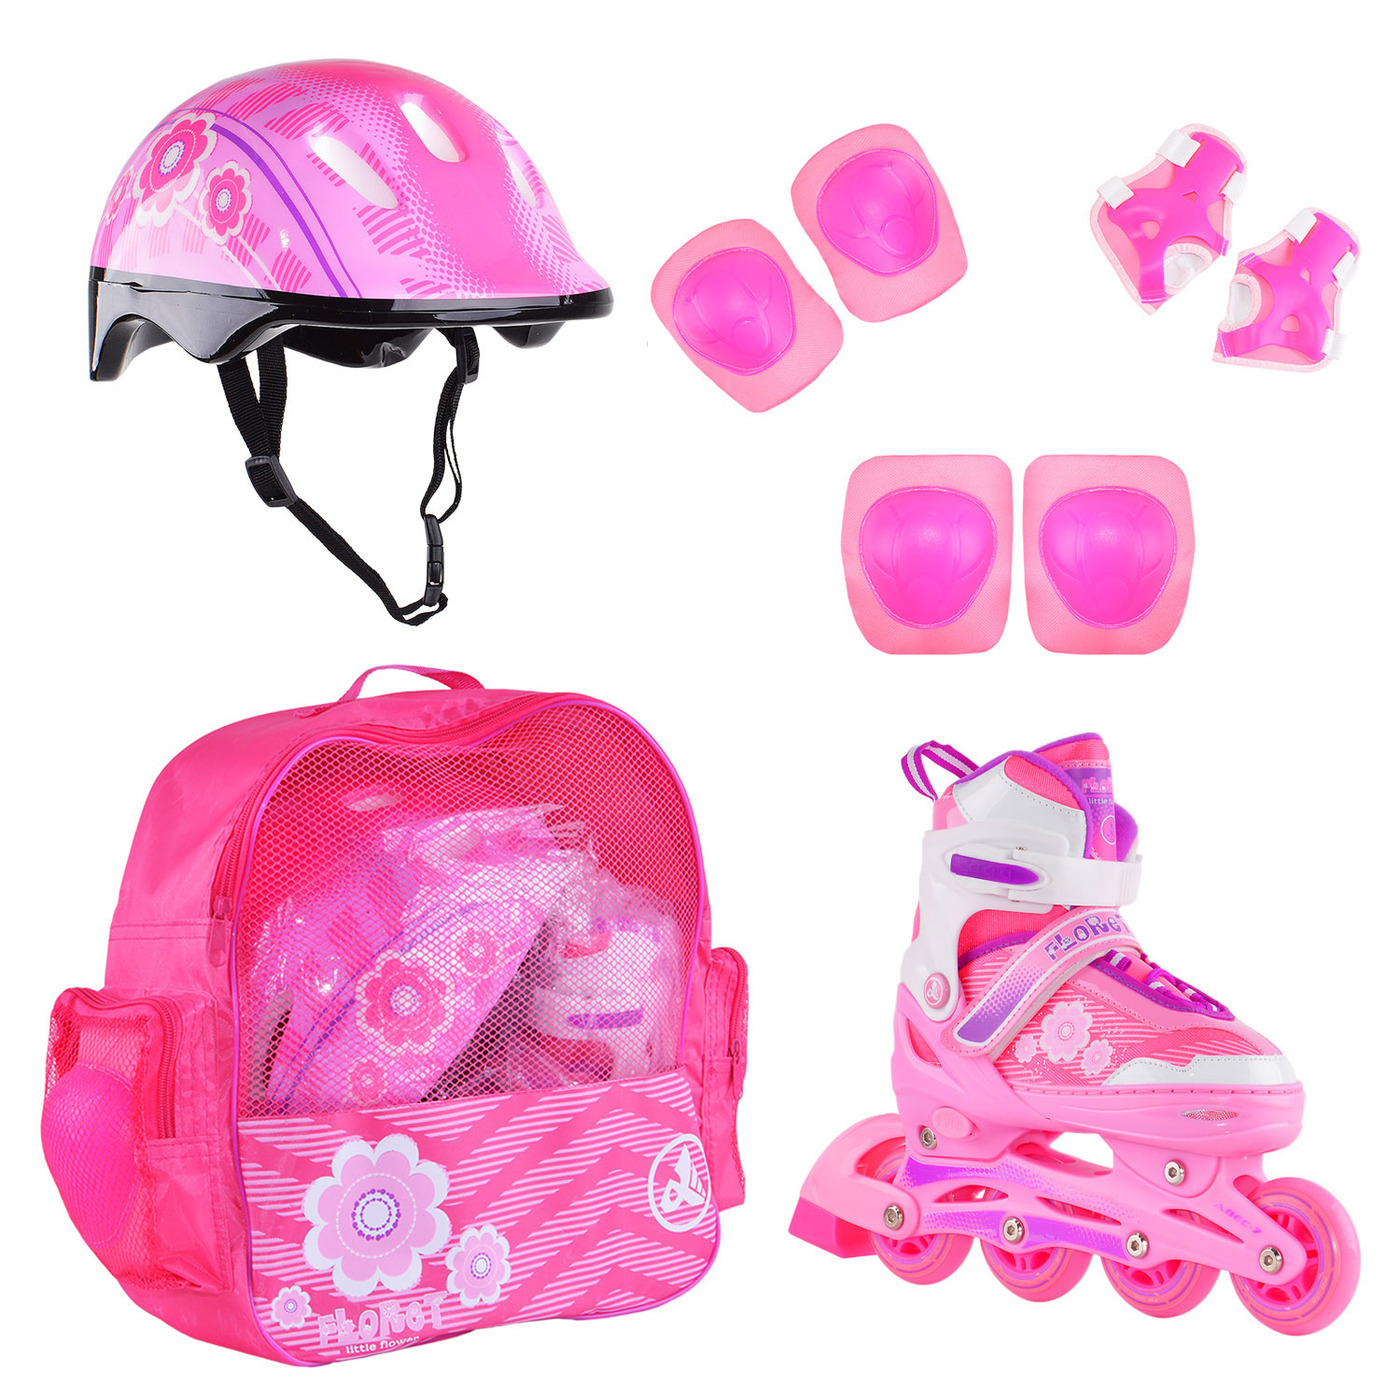 Раздвижные роликовые коньки Alpha Caprice FLORET Wh/Pink/Viol шлем, защита, сумка M:35-38 раздвижные коньки rgx cosmo pink